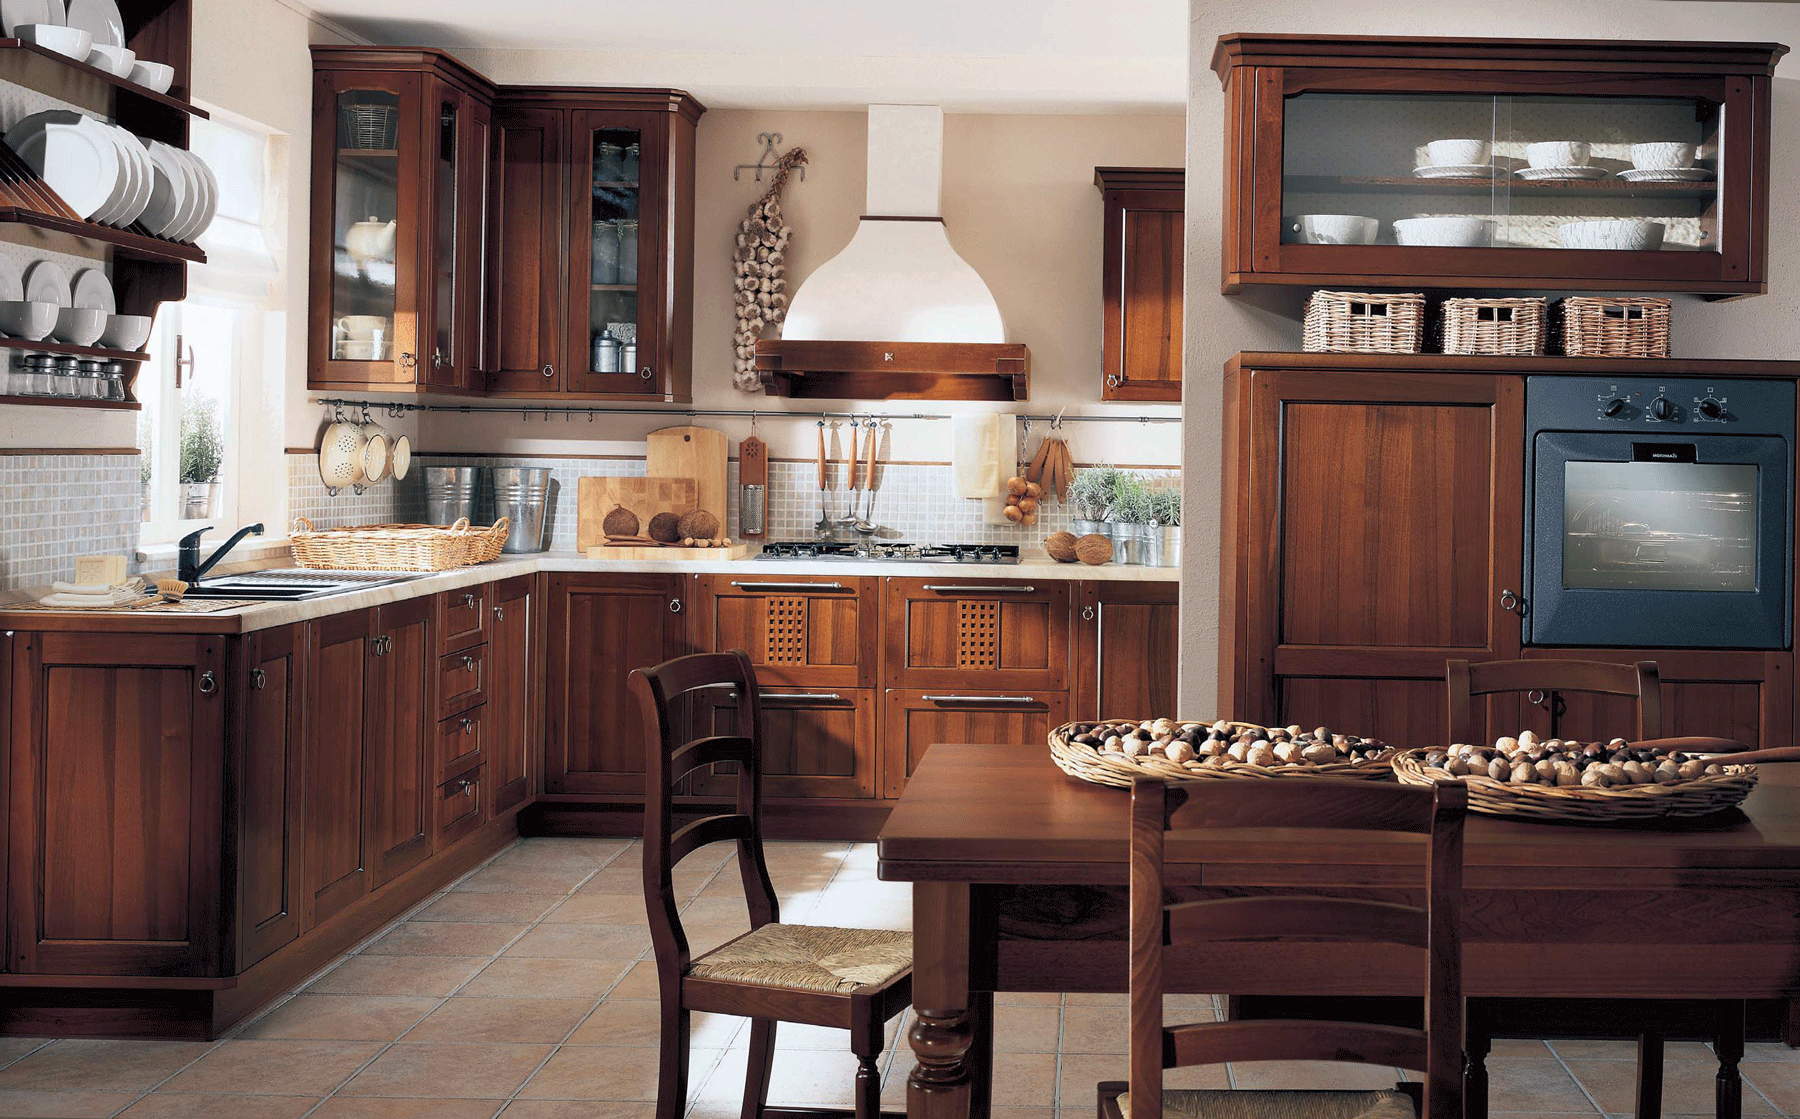 Hjørnebrunt sett i kjøkken i landlig stil